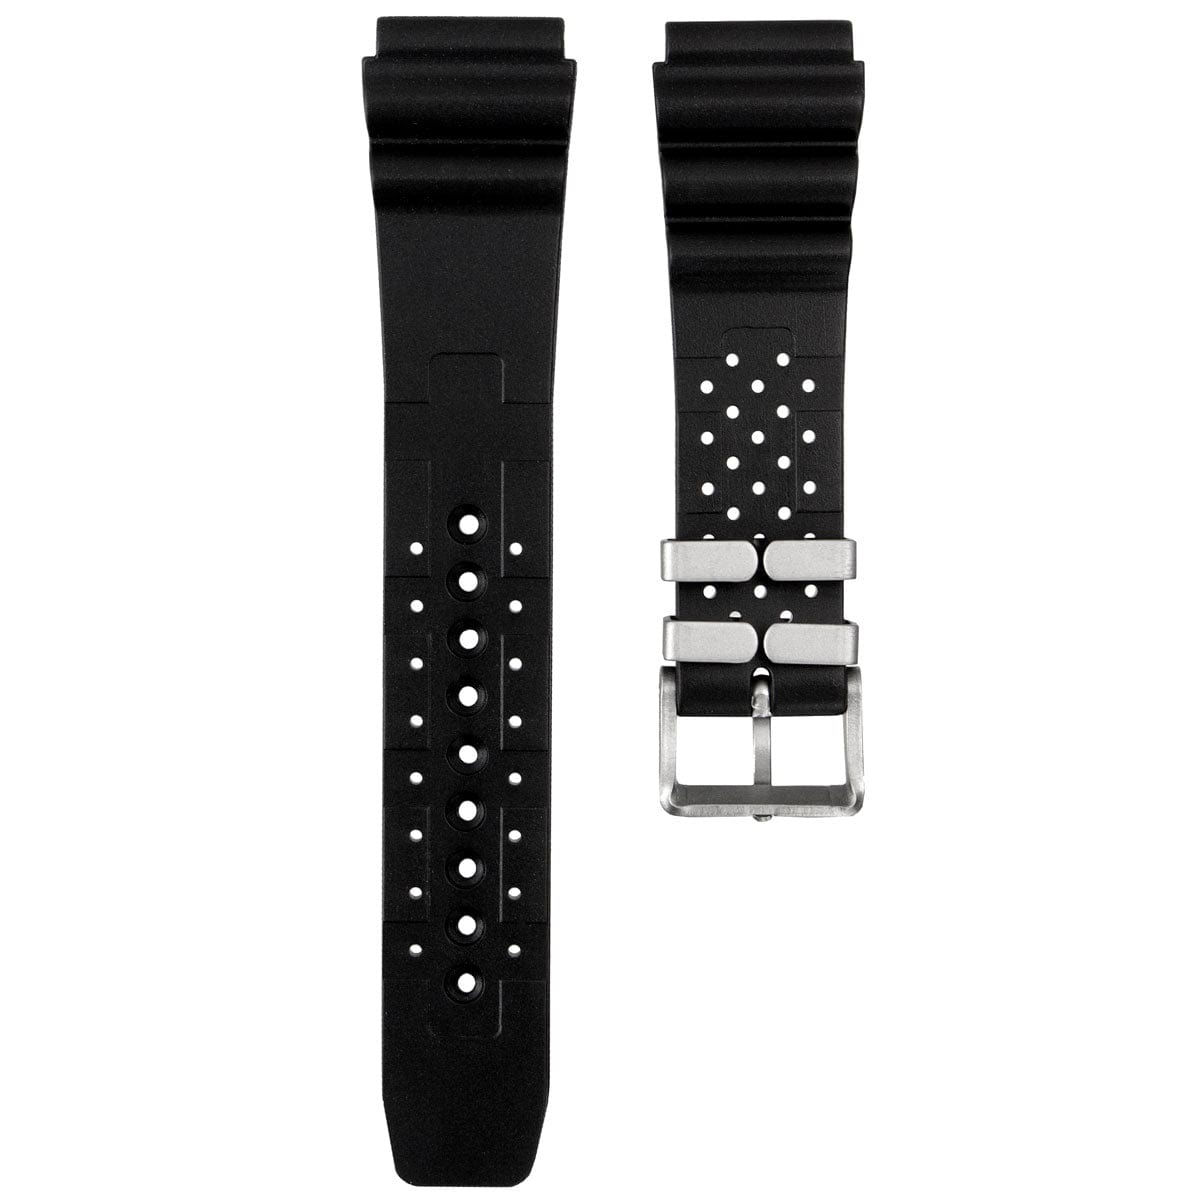 ZULUDIVER 286 Italian Rubber Waterproof Watch Strap - Black